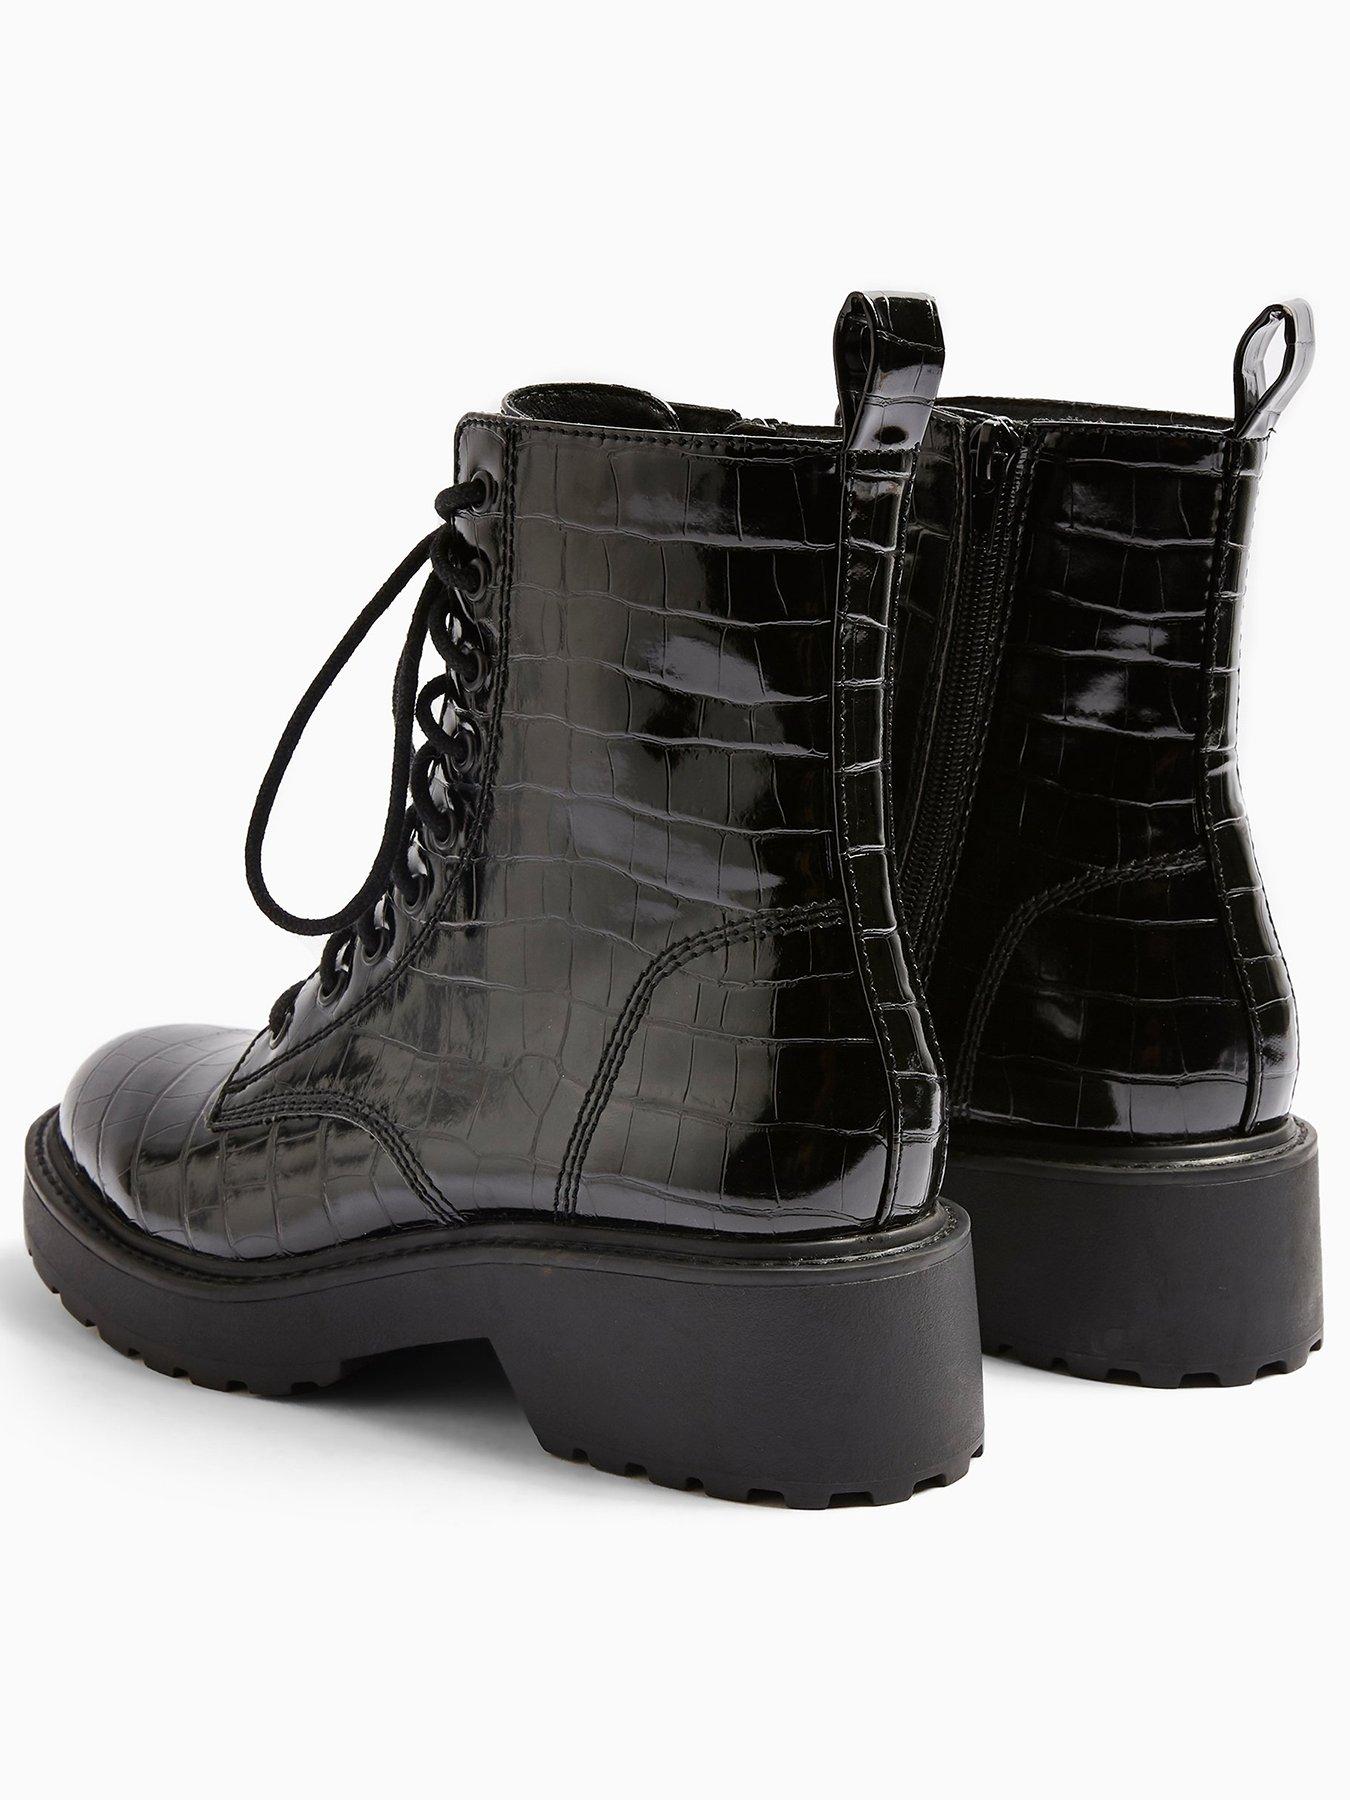 black patent croc lace up boots